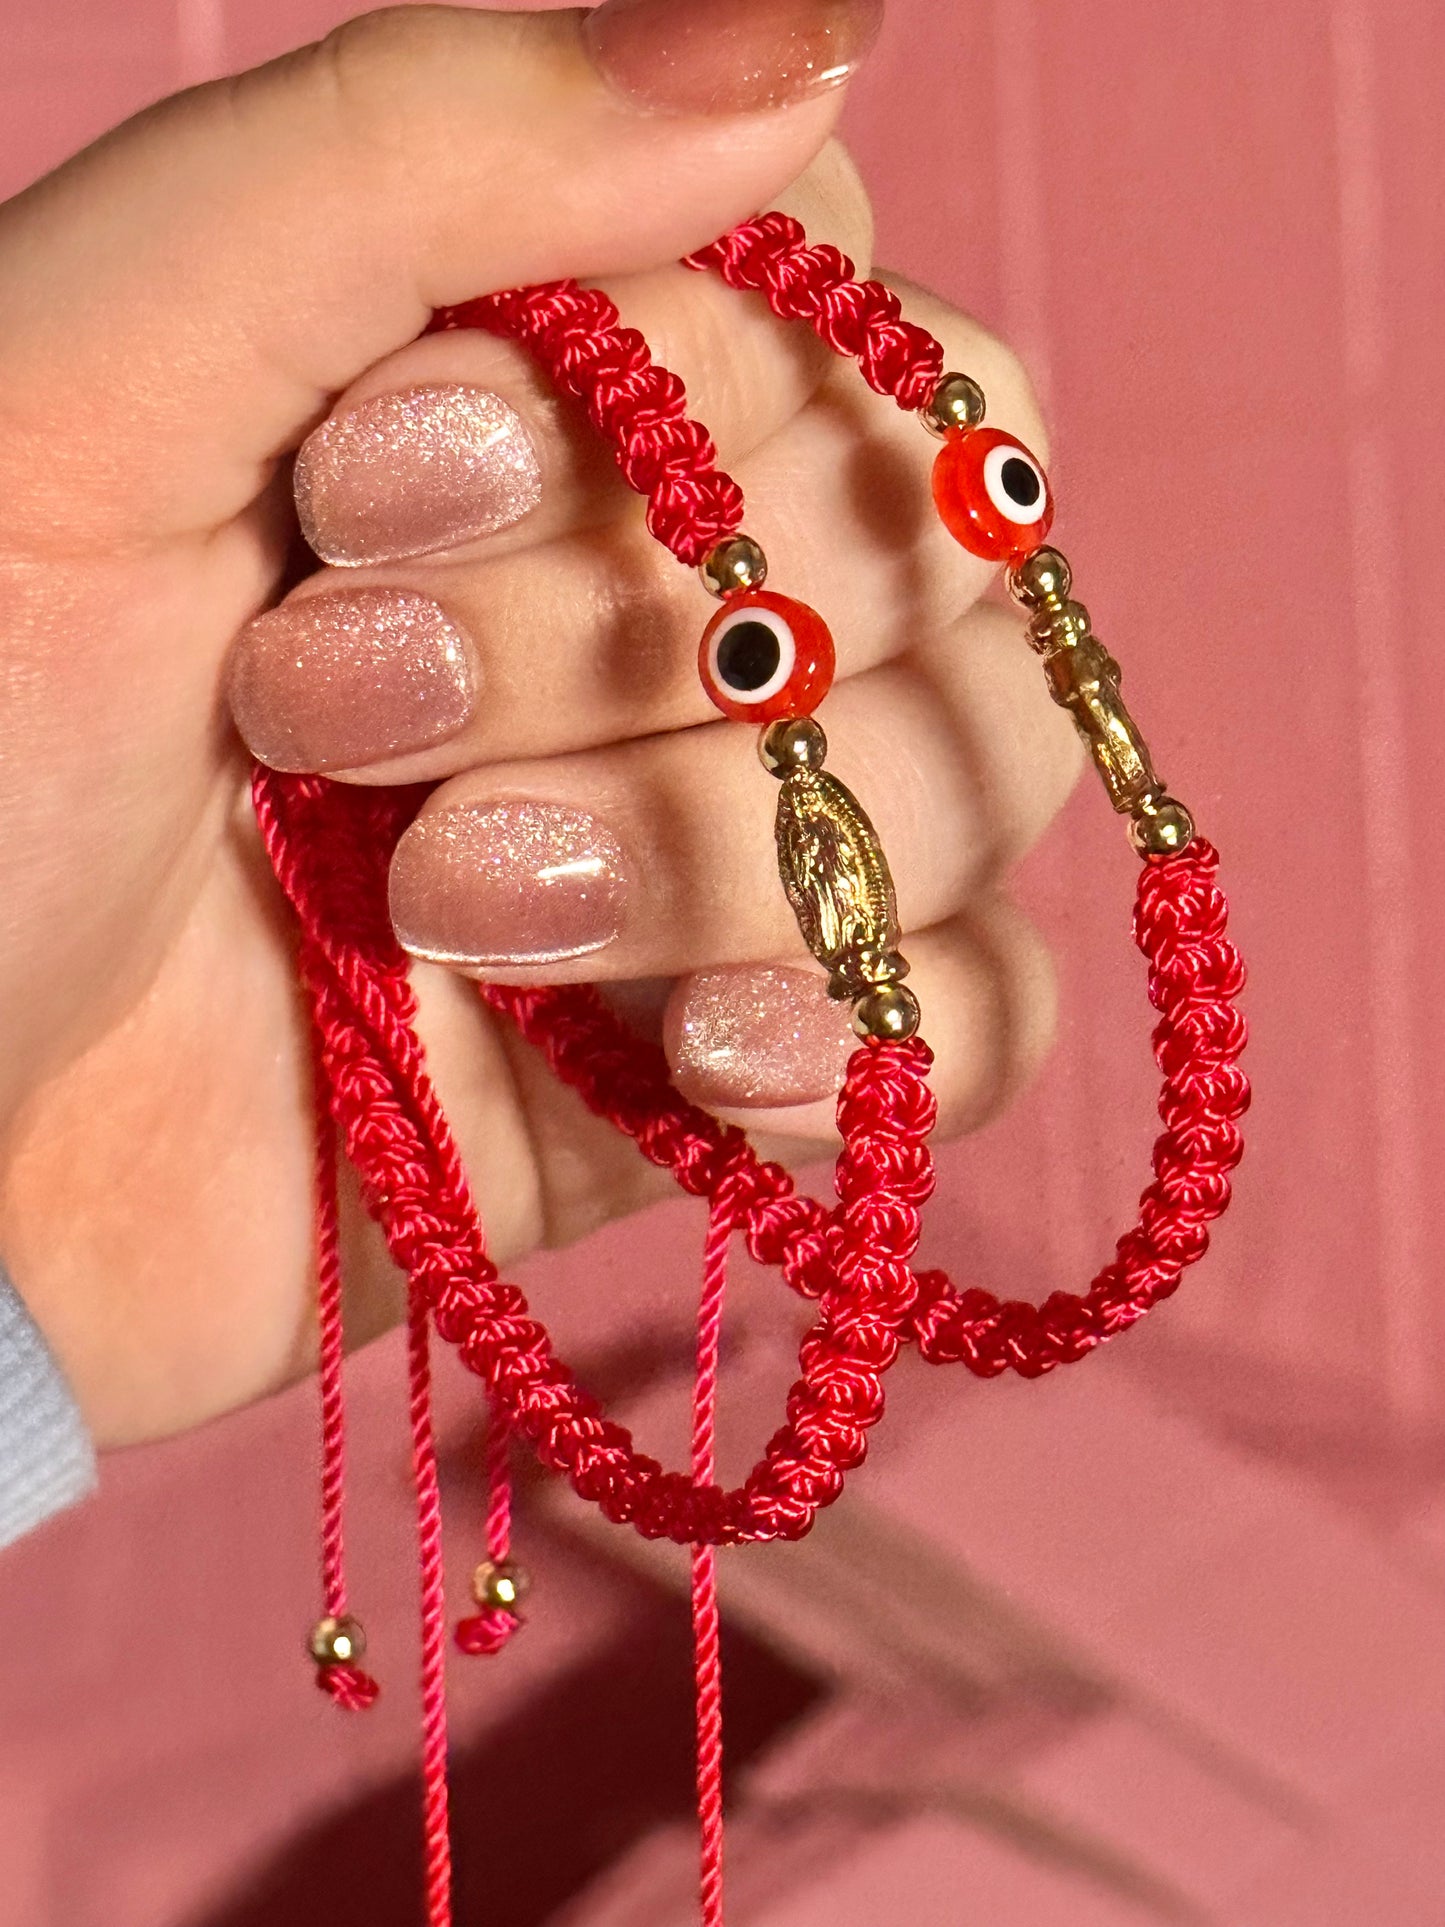 Virgencita x San Judas matching bracelets